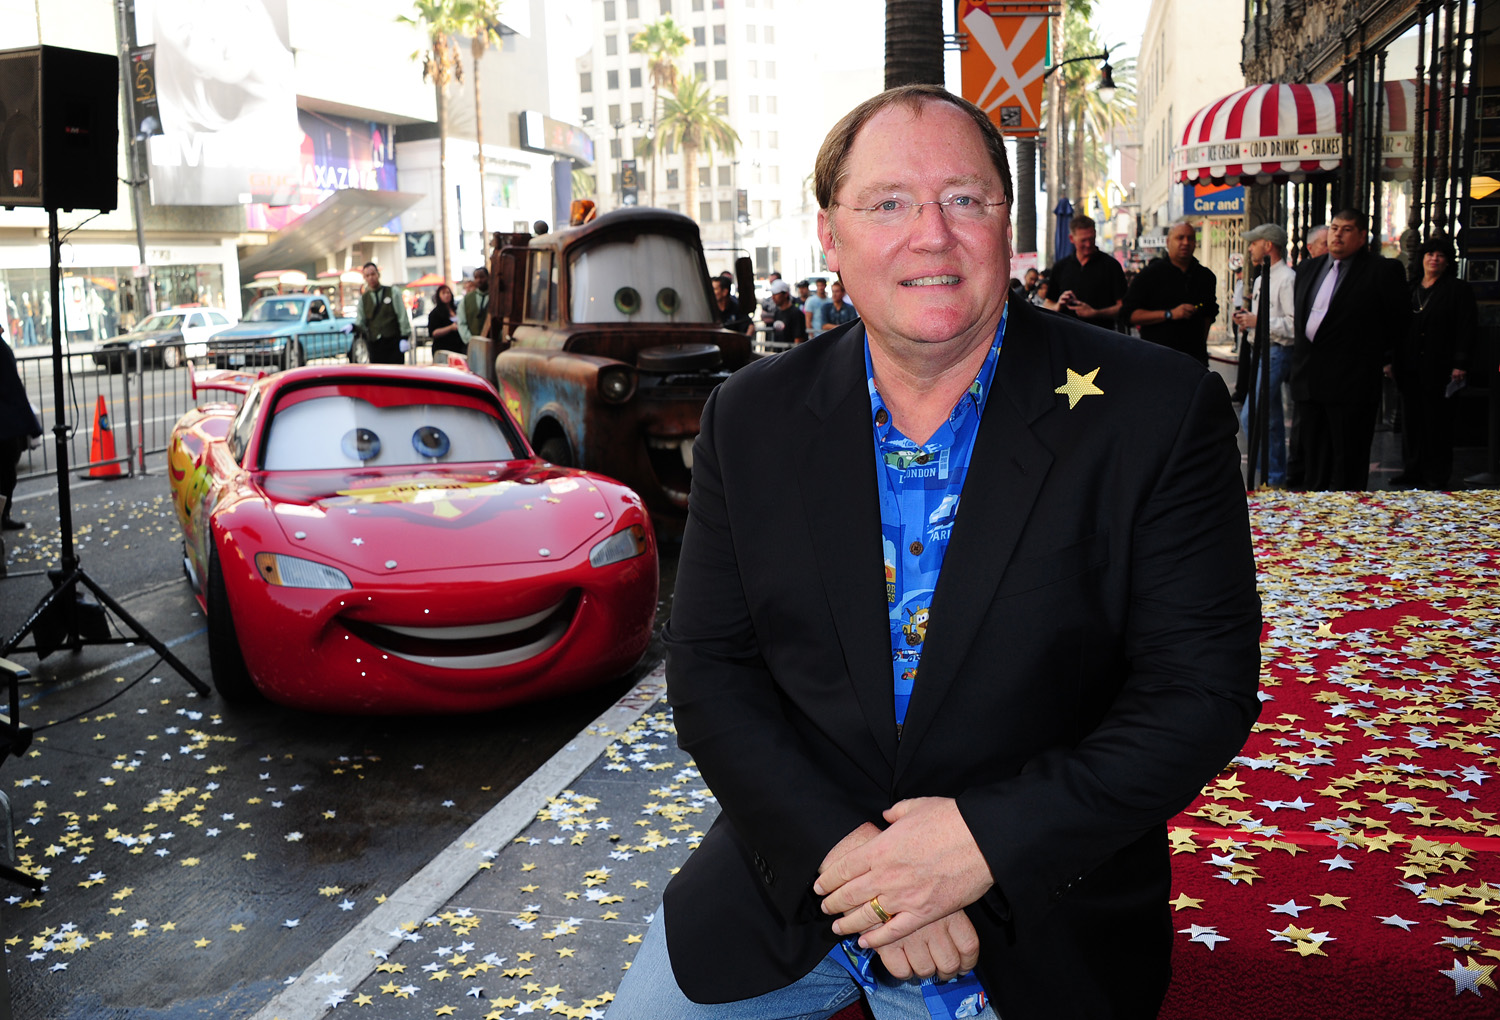 Director de Toy Story abandona la empresa tras acusaciones de acoso sexual